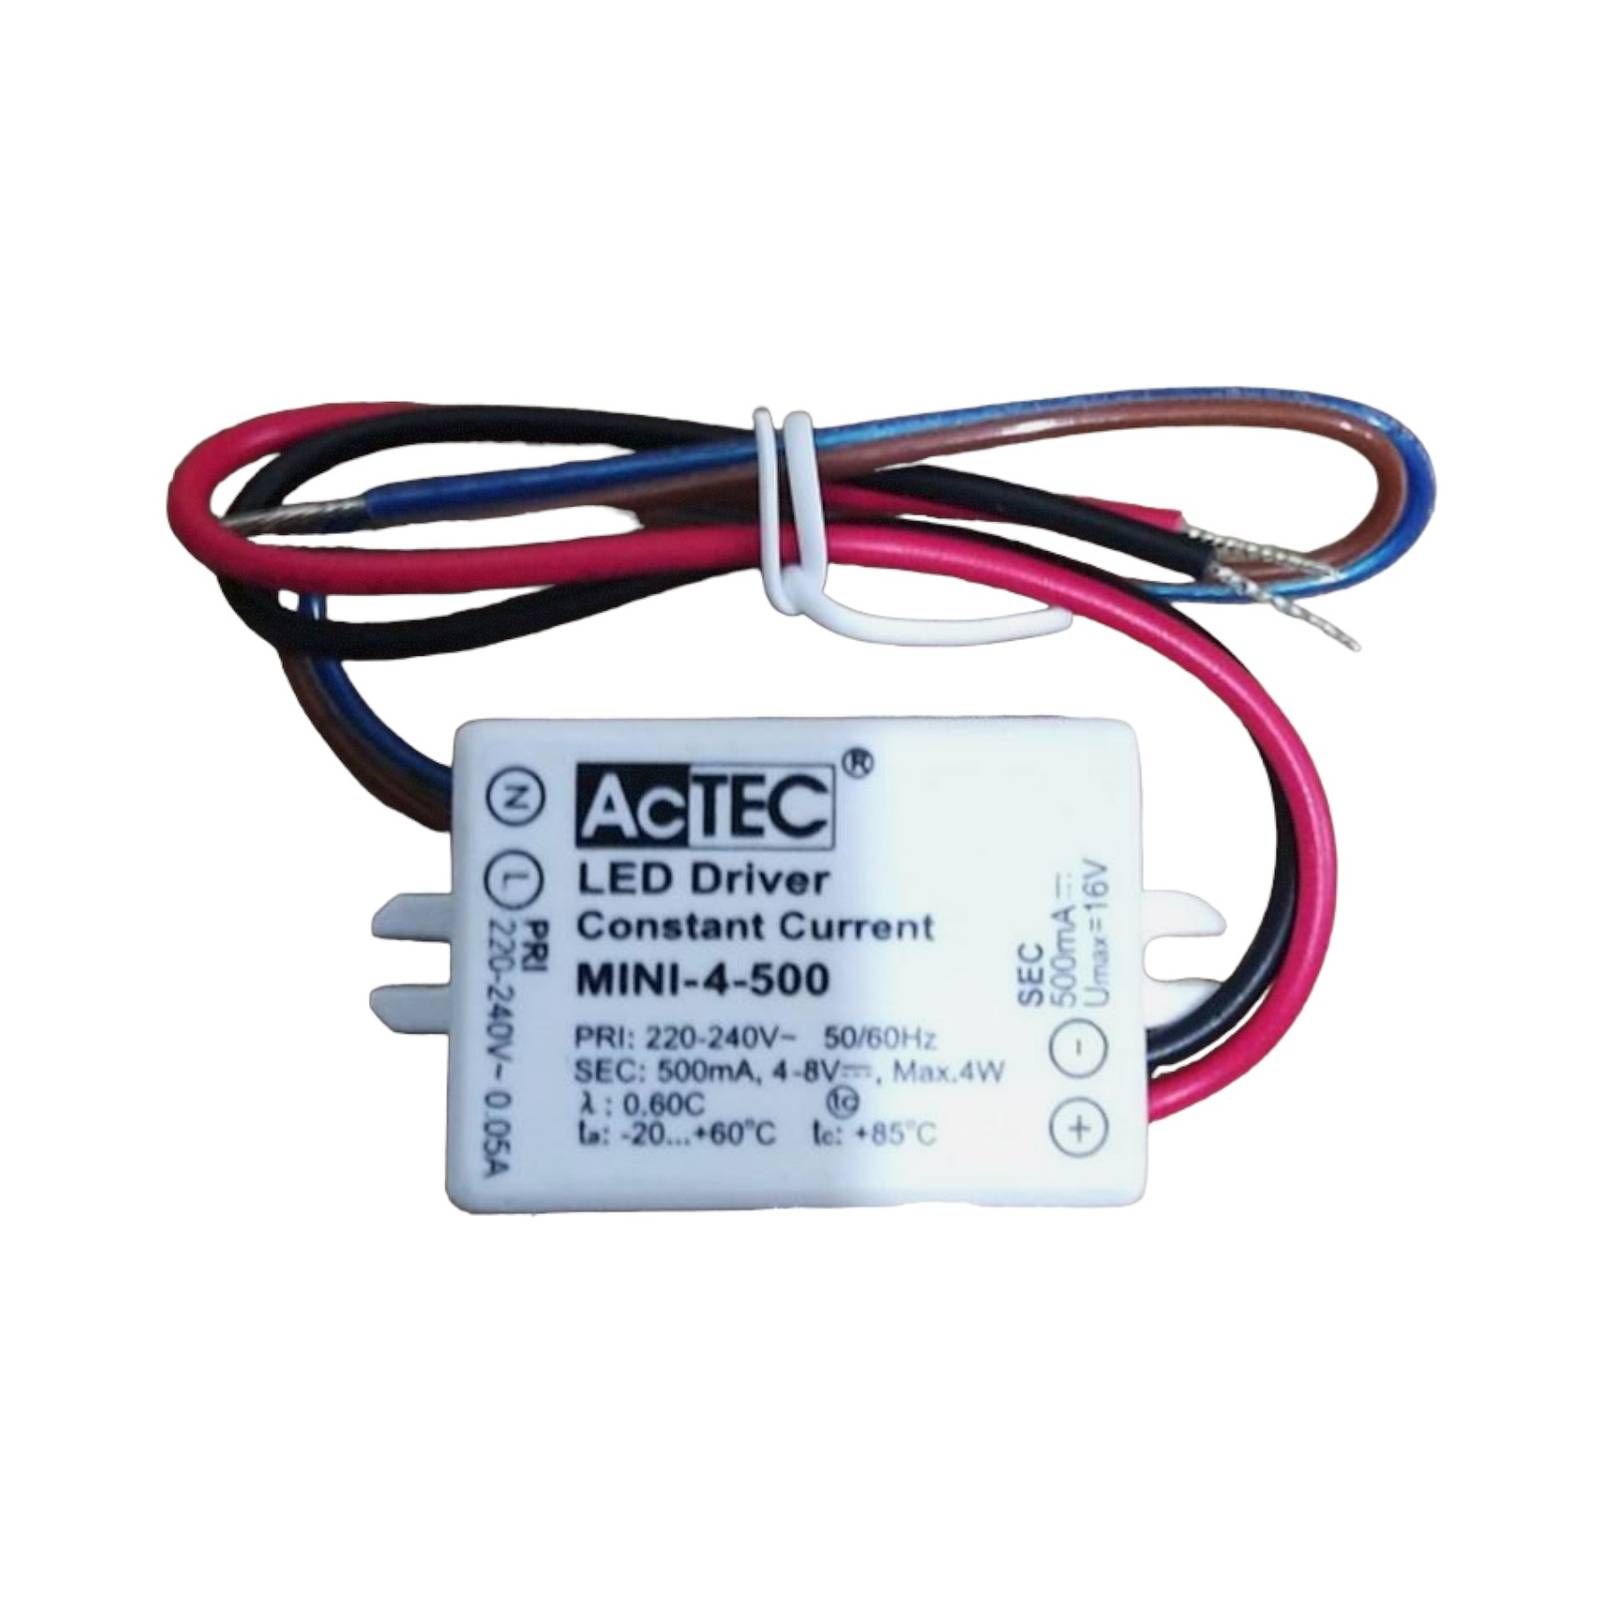 AcTEC Mini LED budič CC 500 mA, 4 W, IP65, plast, P: 5.3 cm, L: 2.7 cm, K: 2.1cm